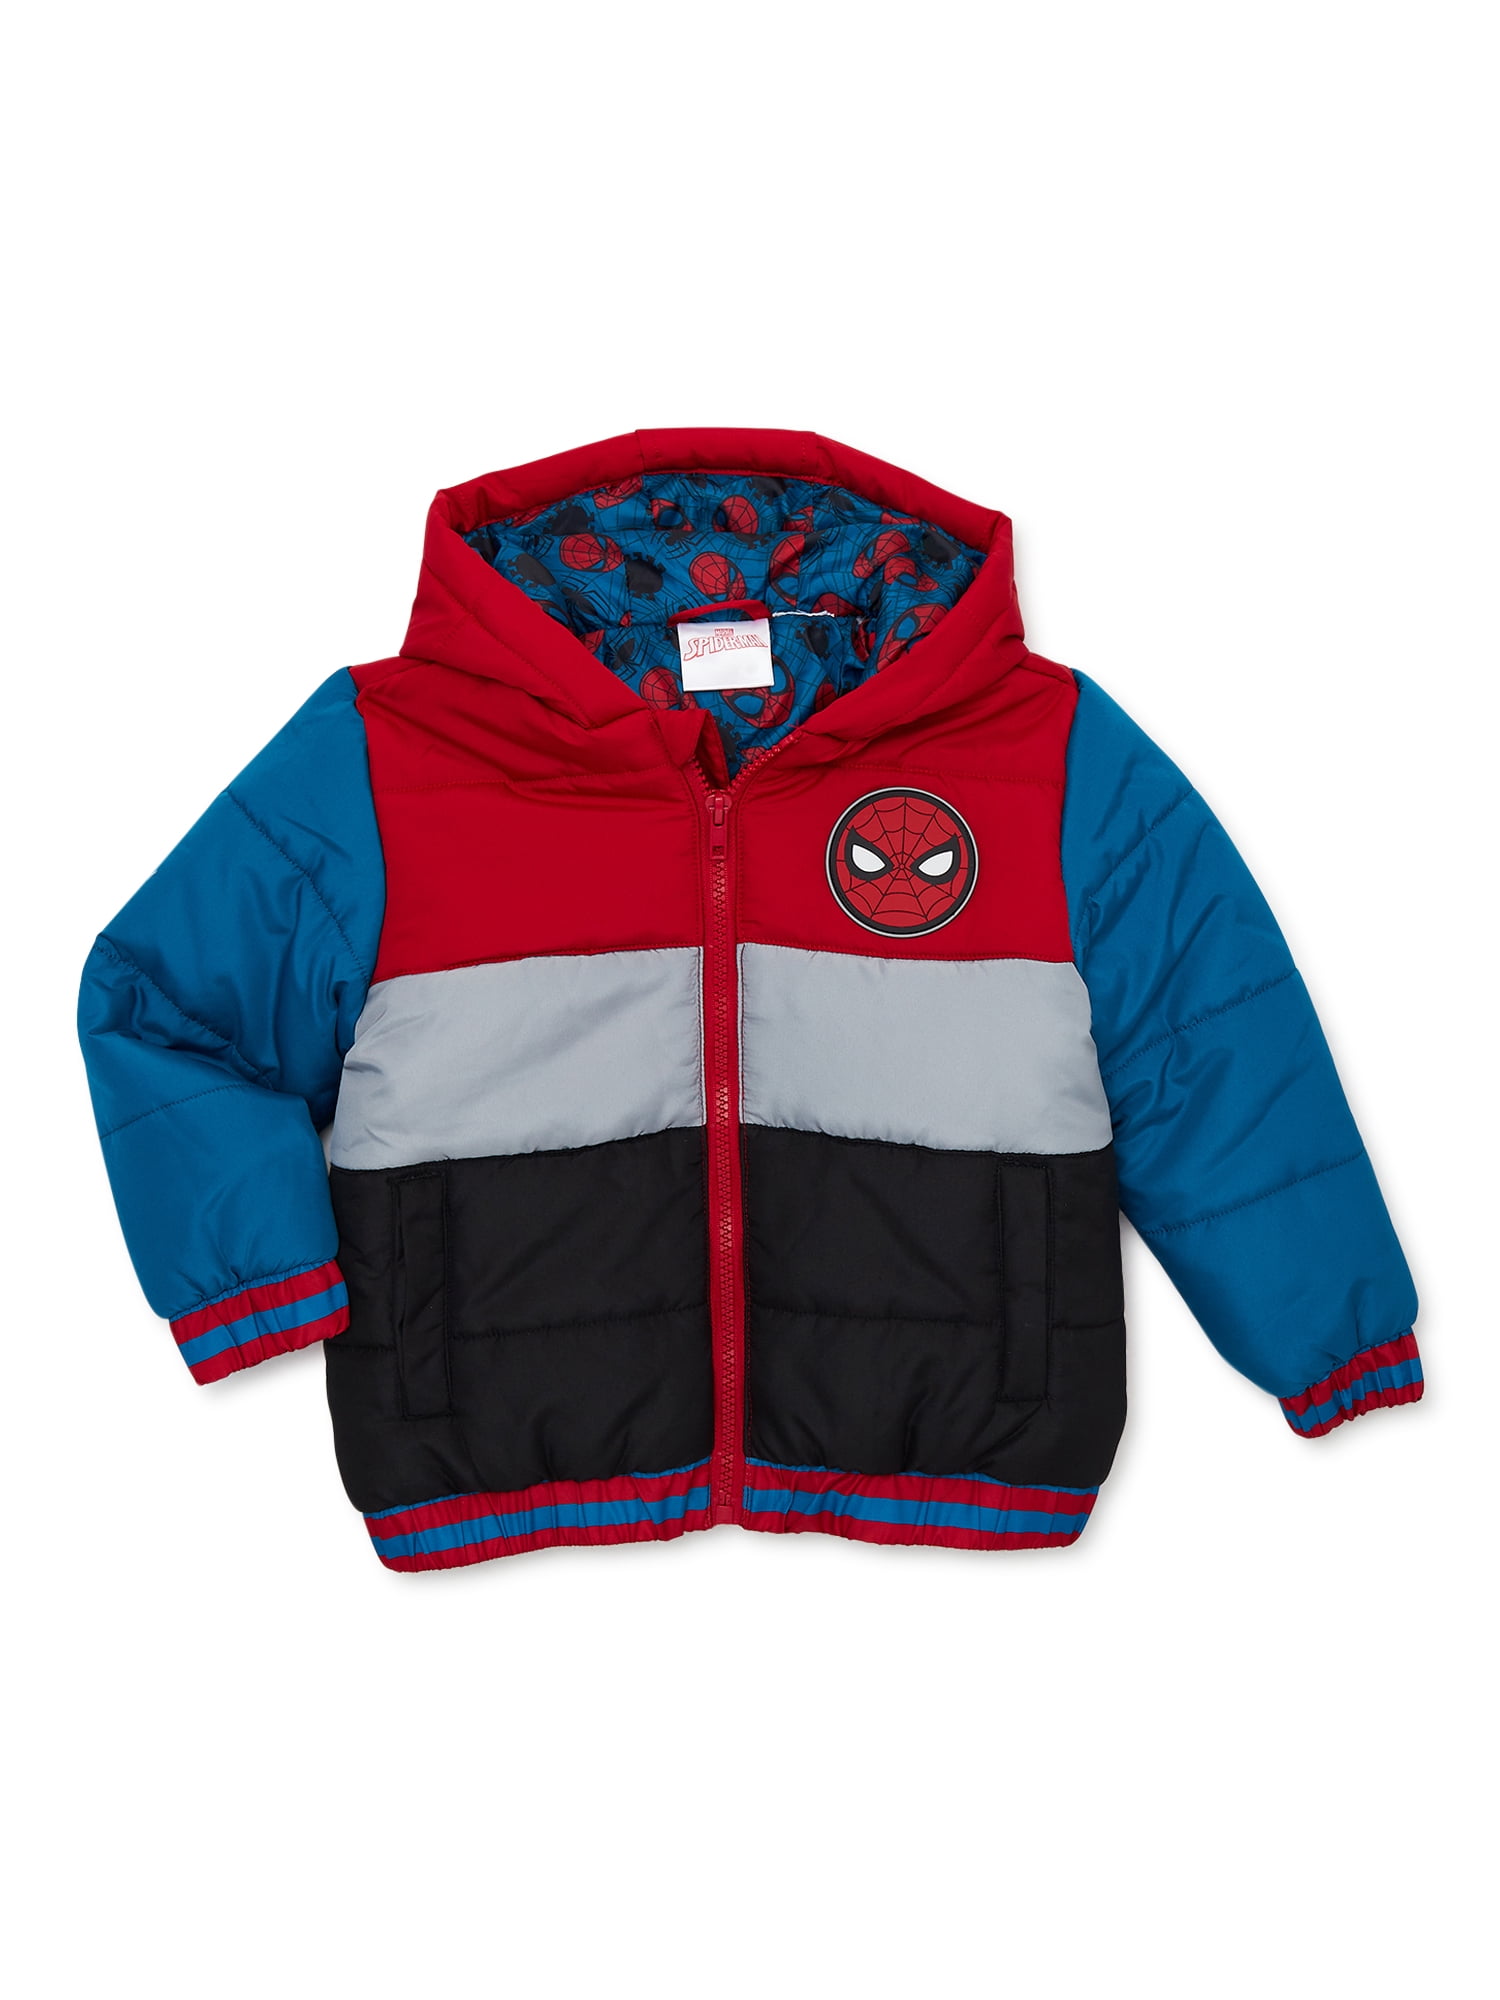 Vintage Toddler Boys Girls Coat Jacket Red Quilted Fur Lined Hood Ski Patch